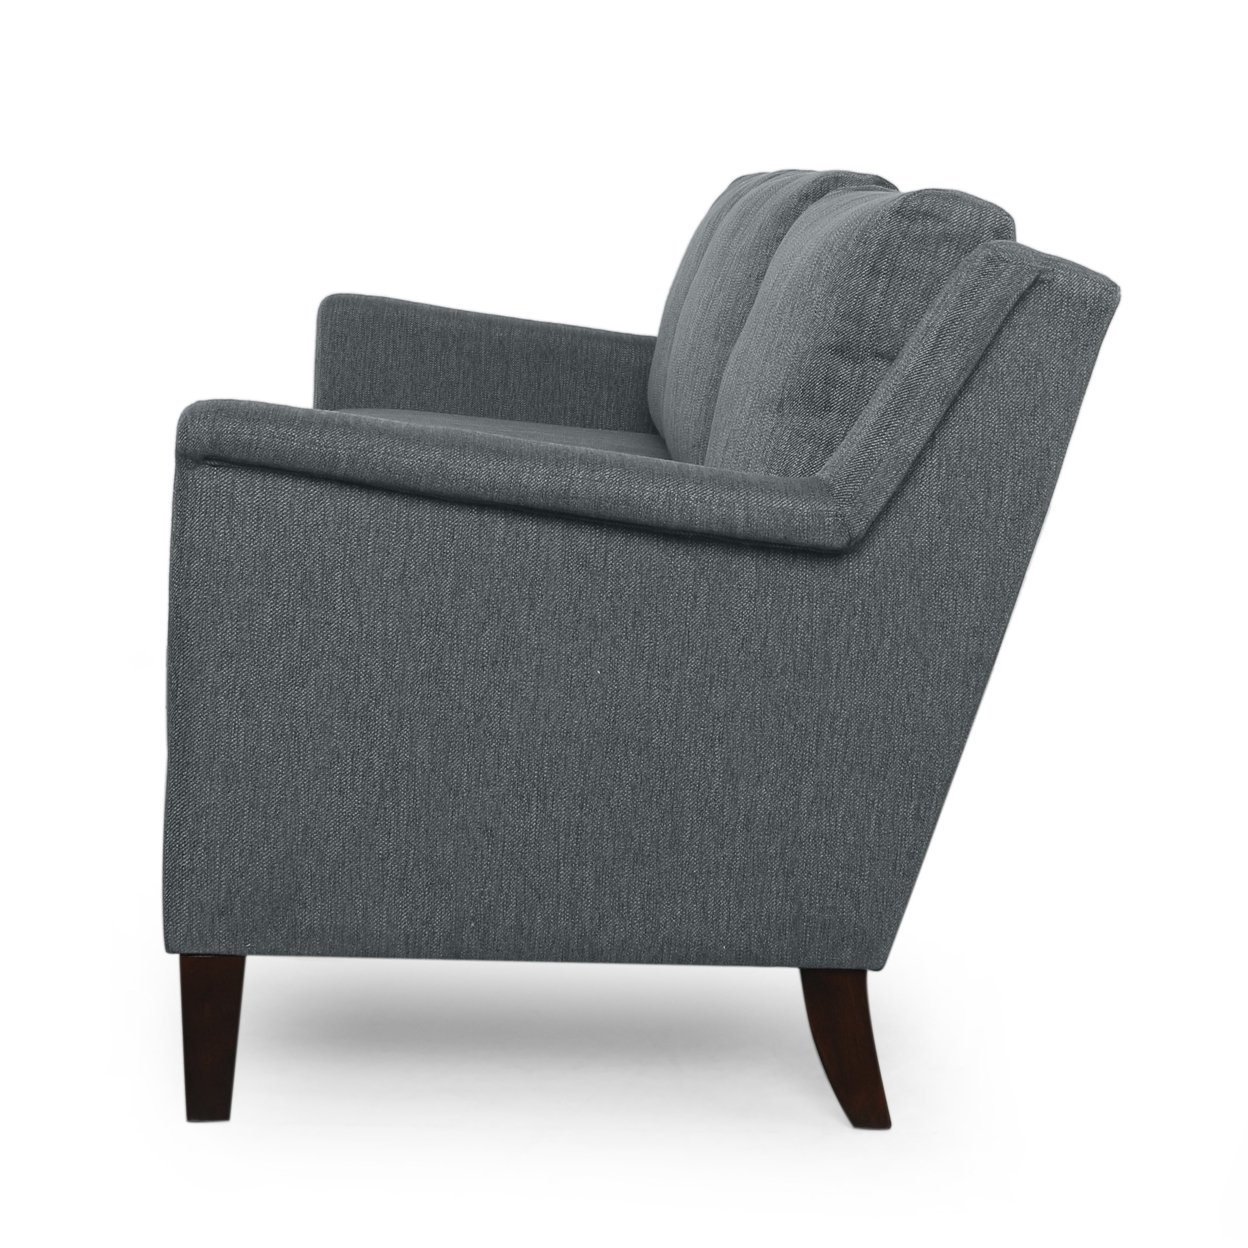 Franz Contemporary 3 Seater Fabric Sofa - Espresso/charcoal